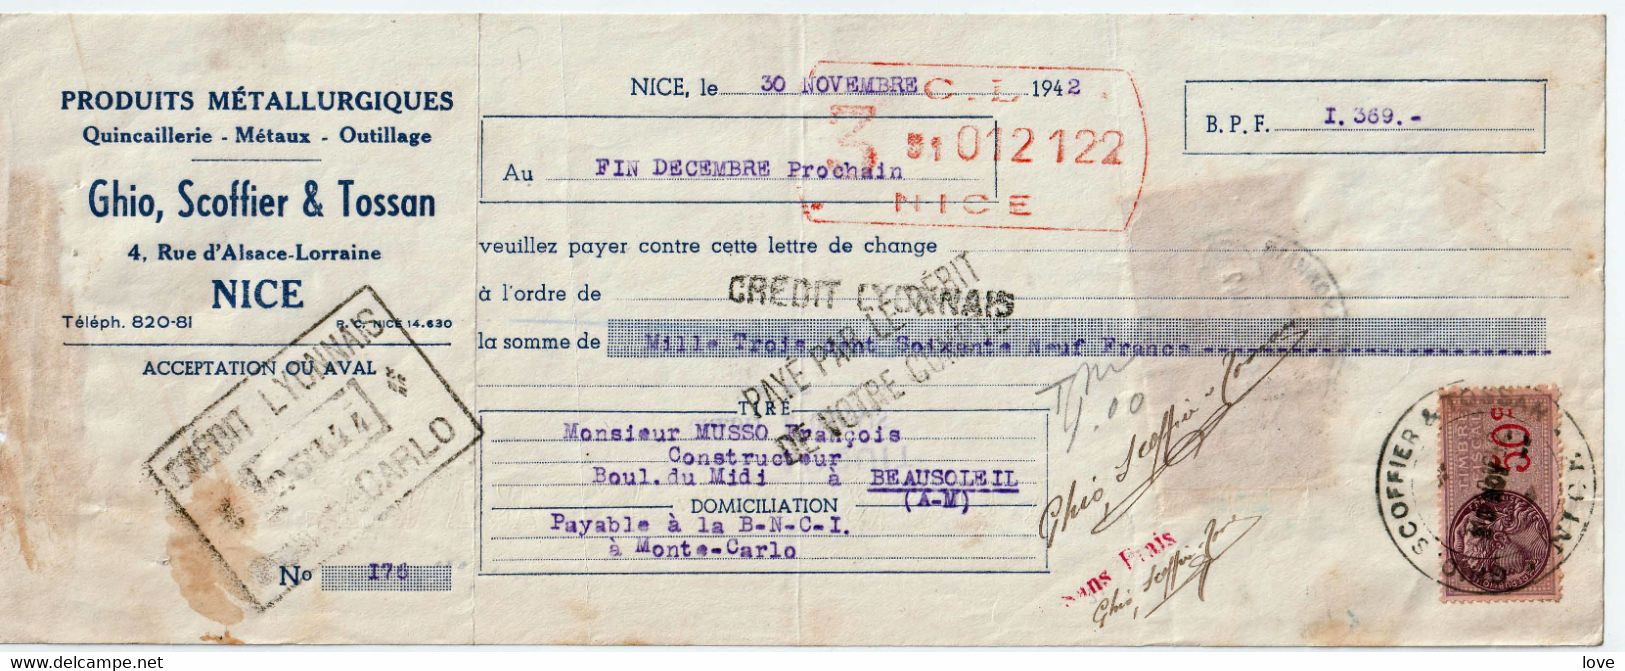 MONACO: Monnaie- Matières Sur Une Facture De M. Musso Du 30/11/1942 Avec Sa Lettre De Change, Afft. Fiscal France/Monaco - Monaco